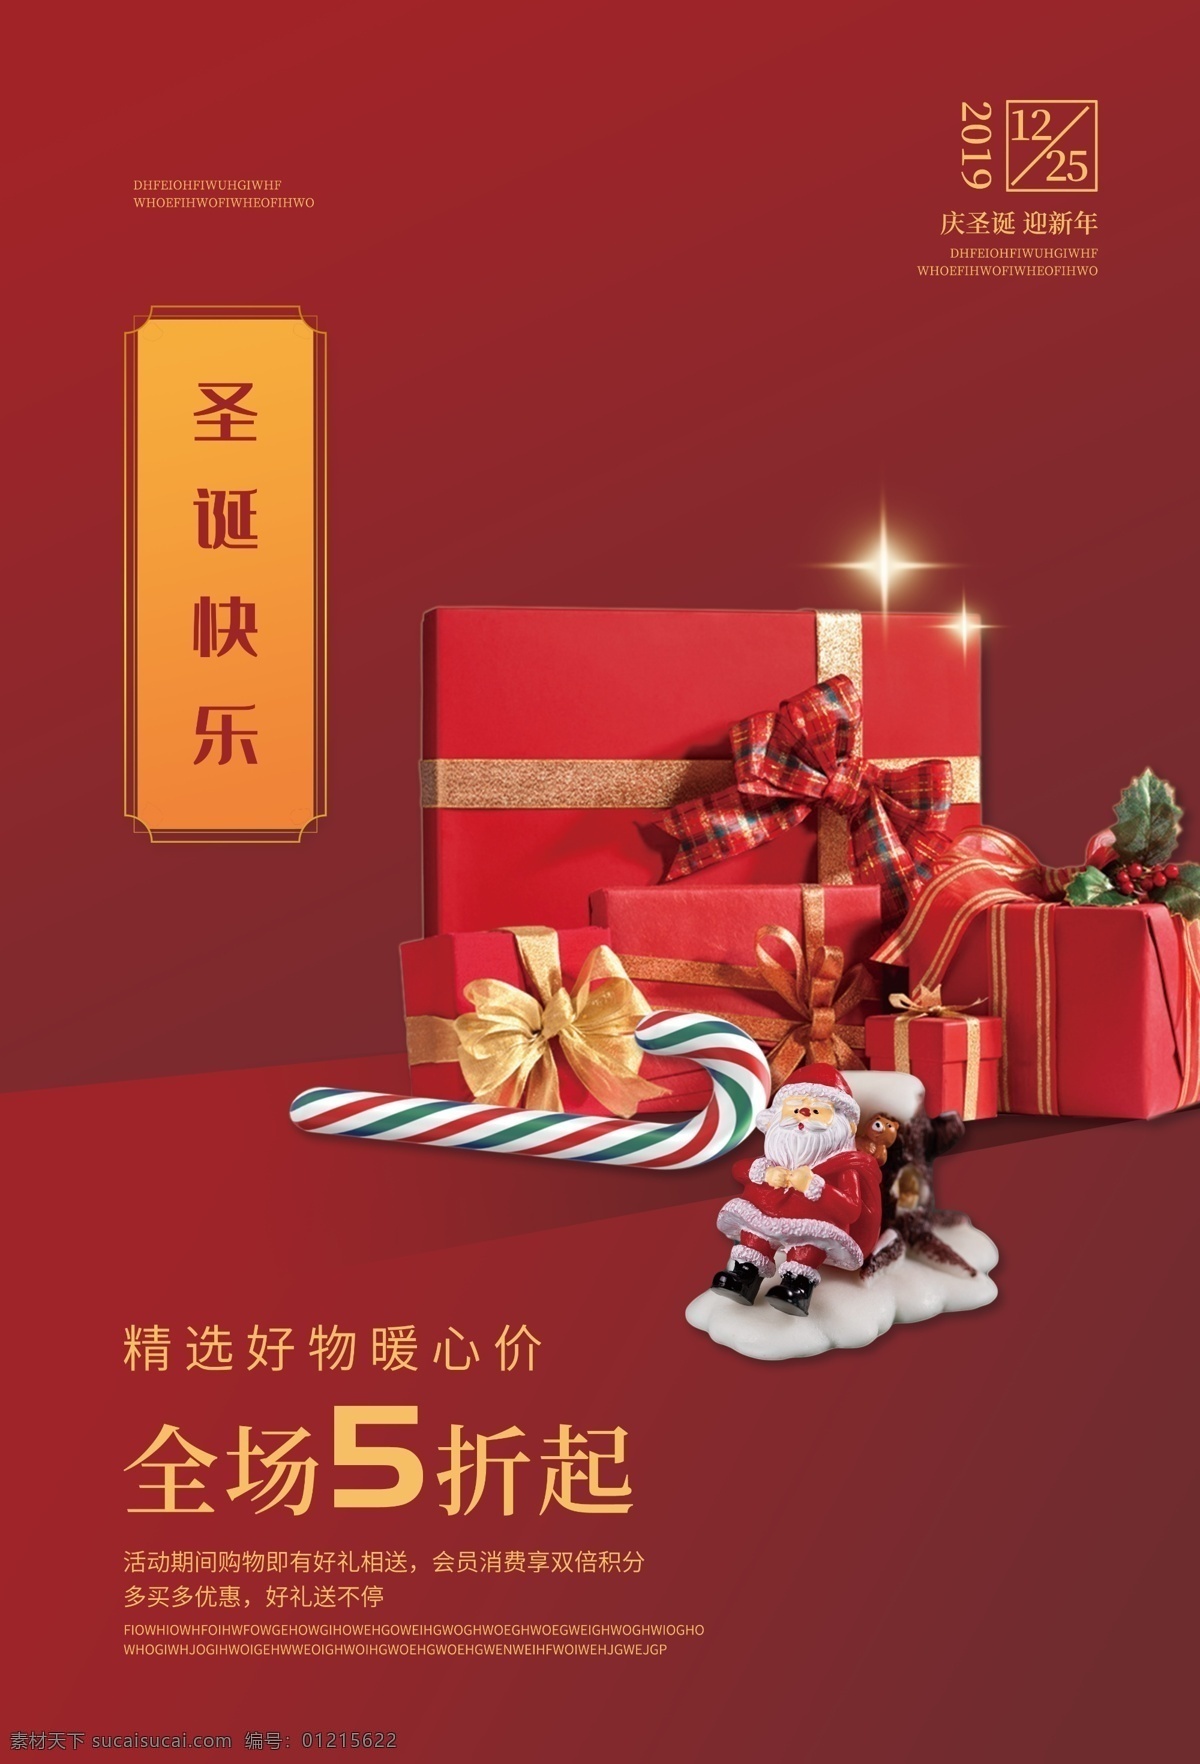 圣诞节 节日 促销活动 海报 素材图片 促销 活动 传统节日